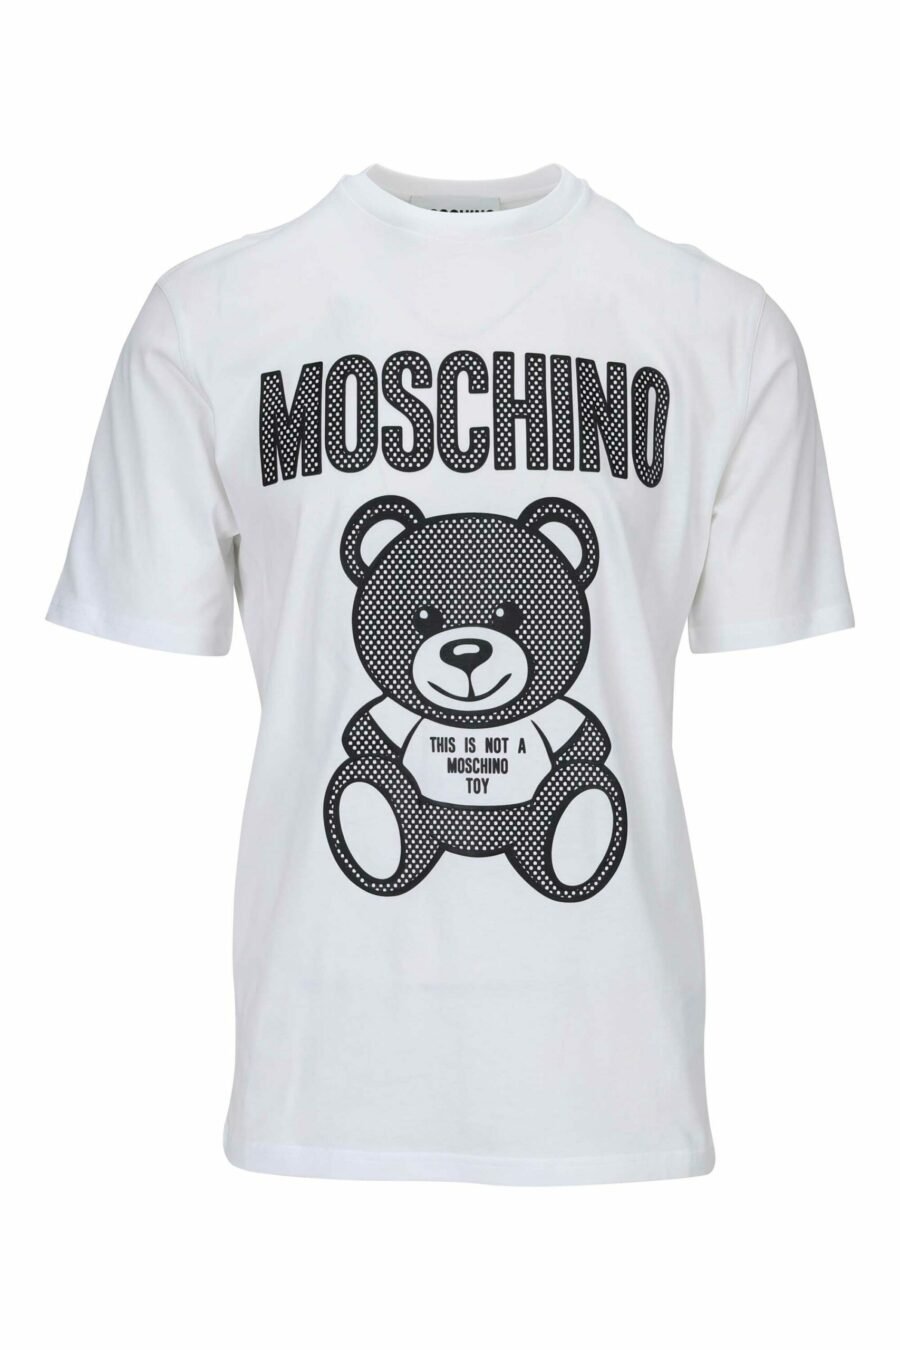 T-shirt branca com maxilogo de urso pontilhado monocromático - 667113455617 scaled